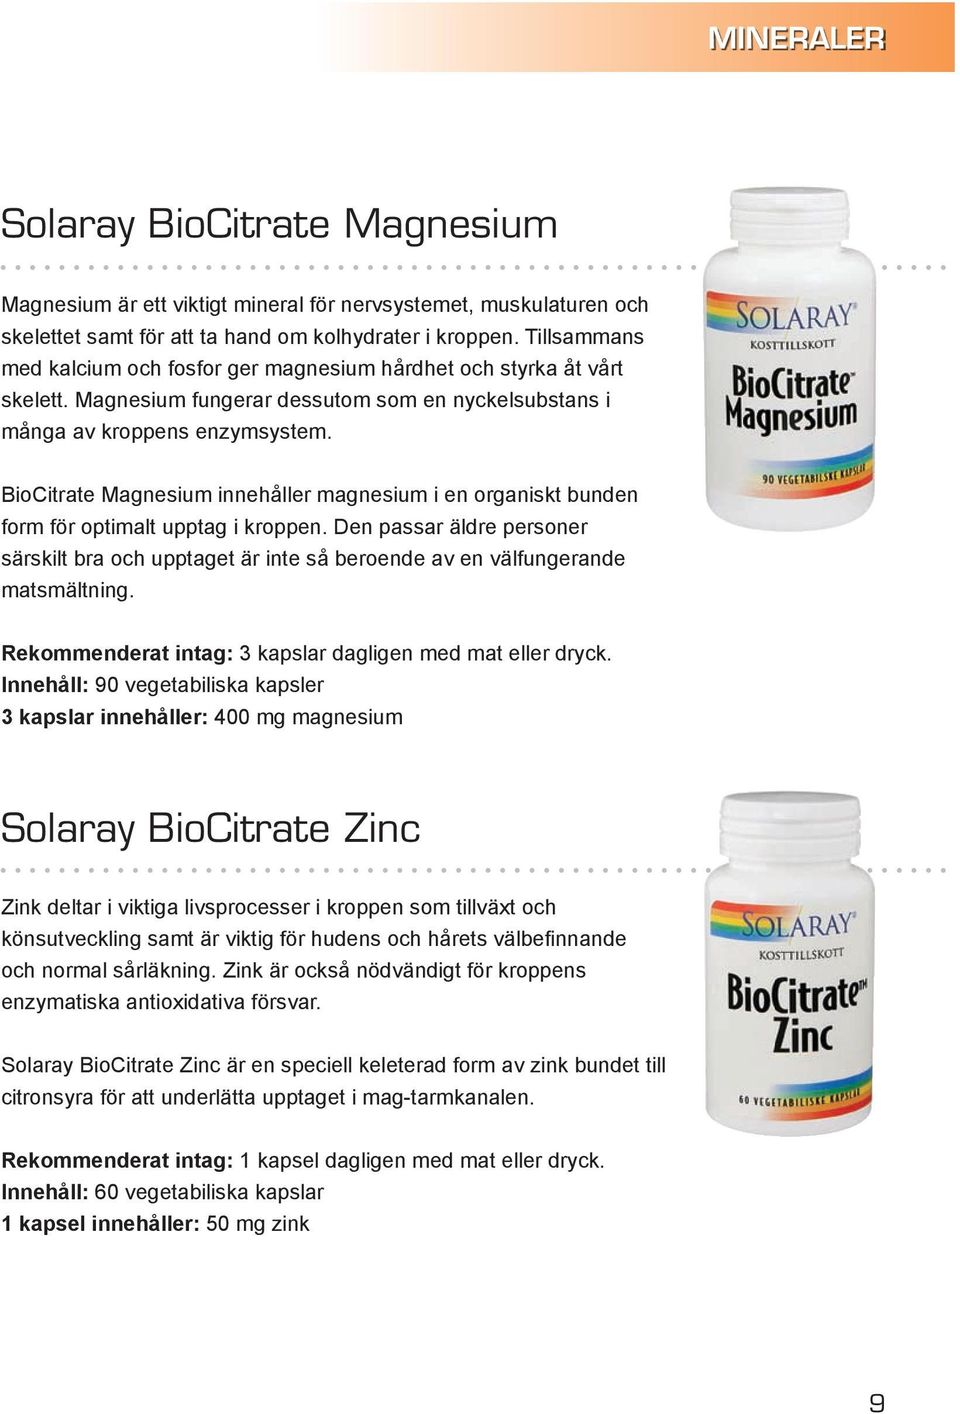 BioCitrate Magnesium innehåller magnesium i en organiskt bunden form för optimalt upptag i kroppen.